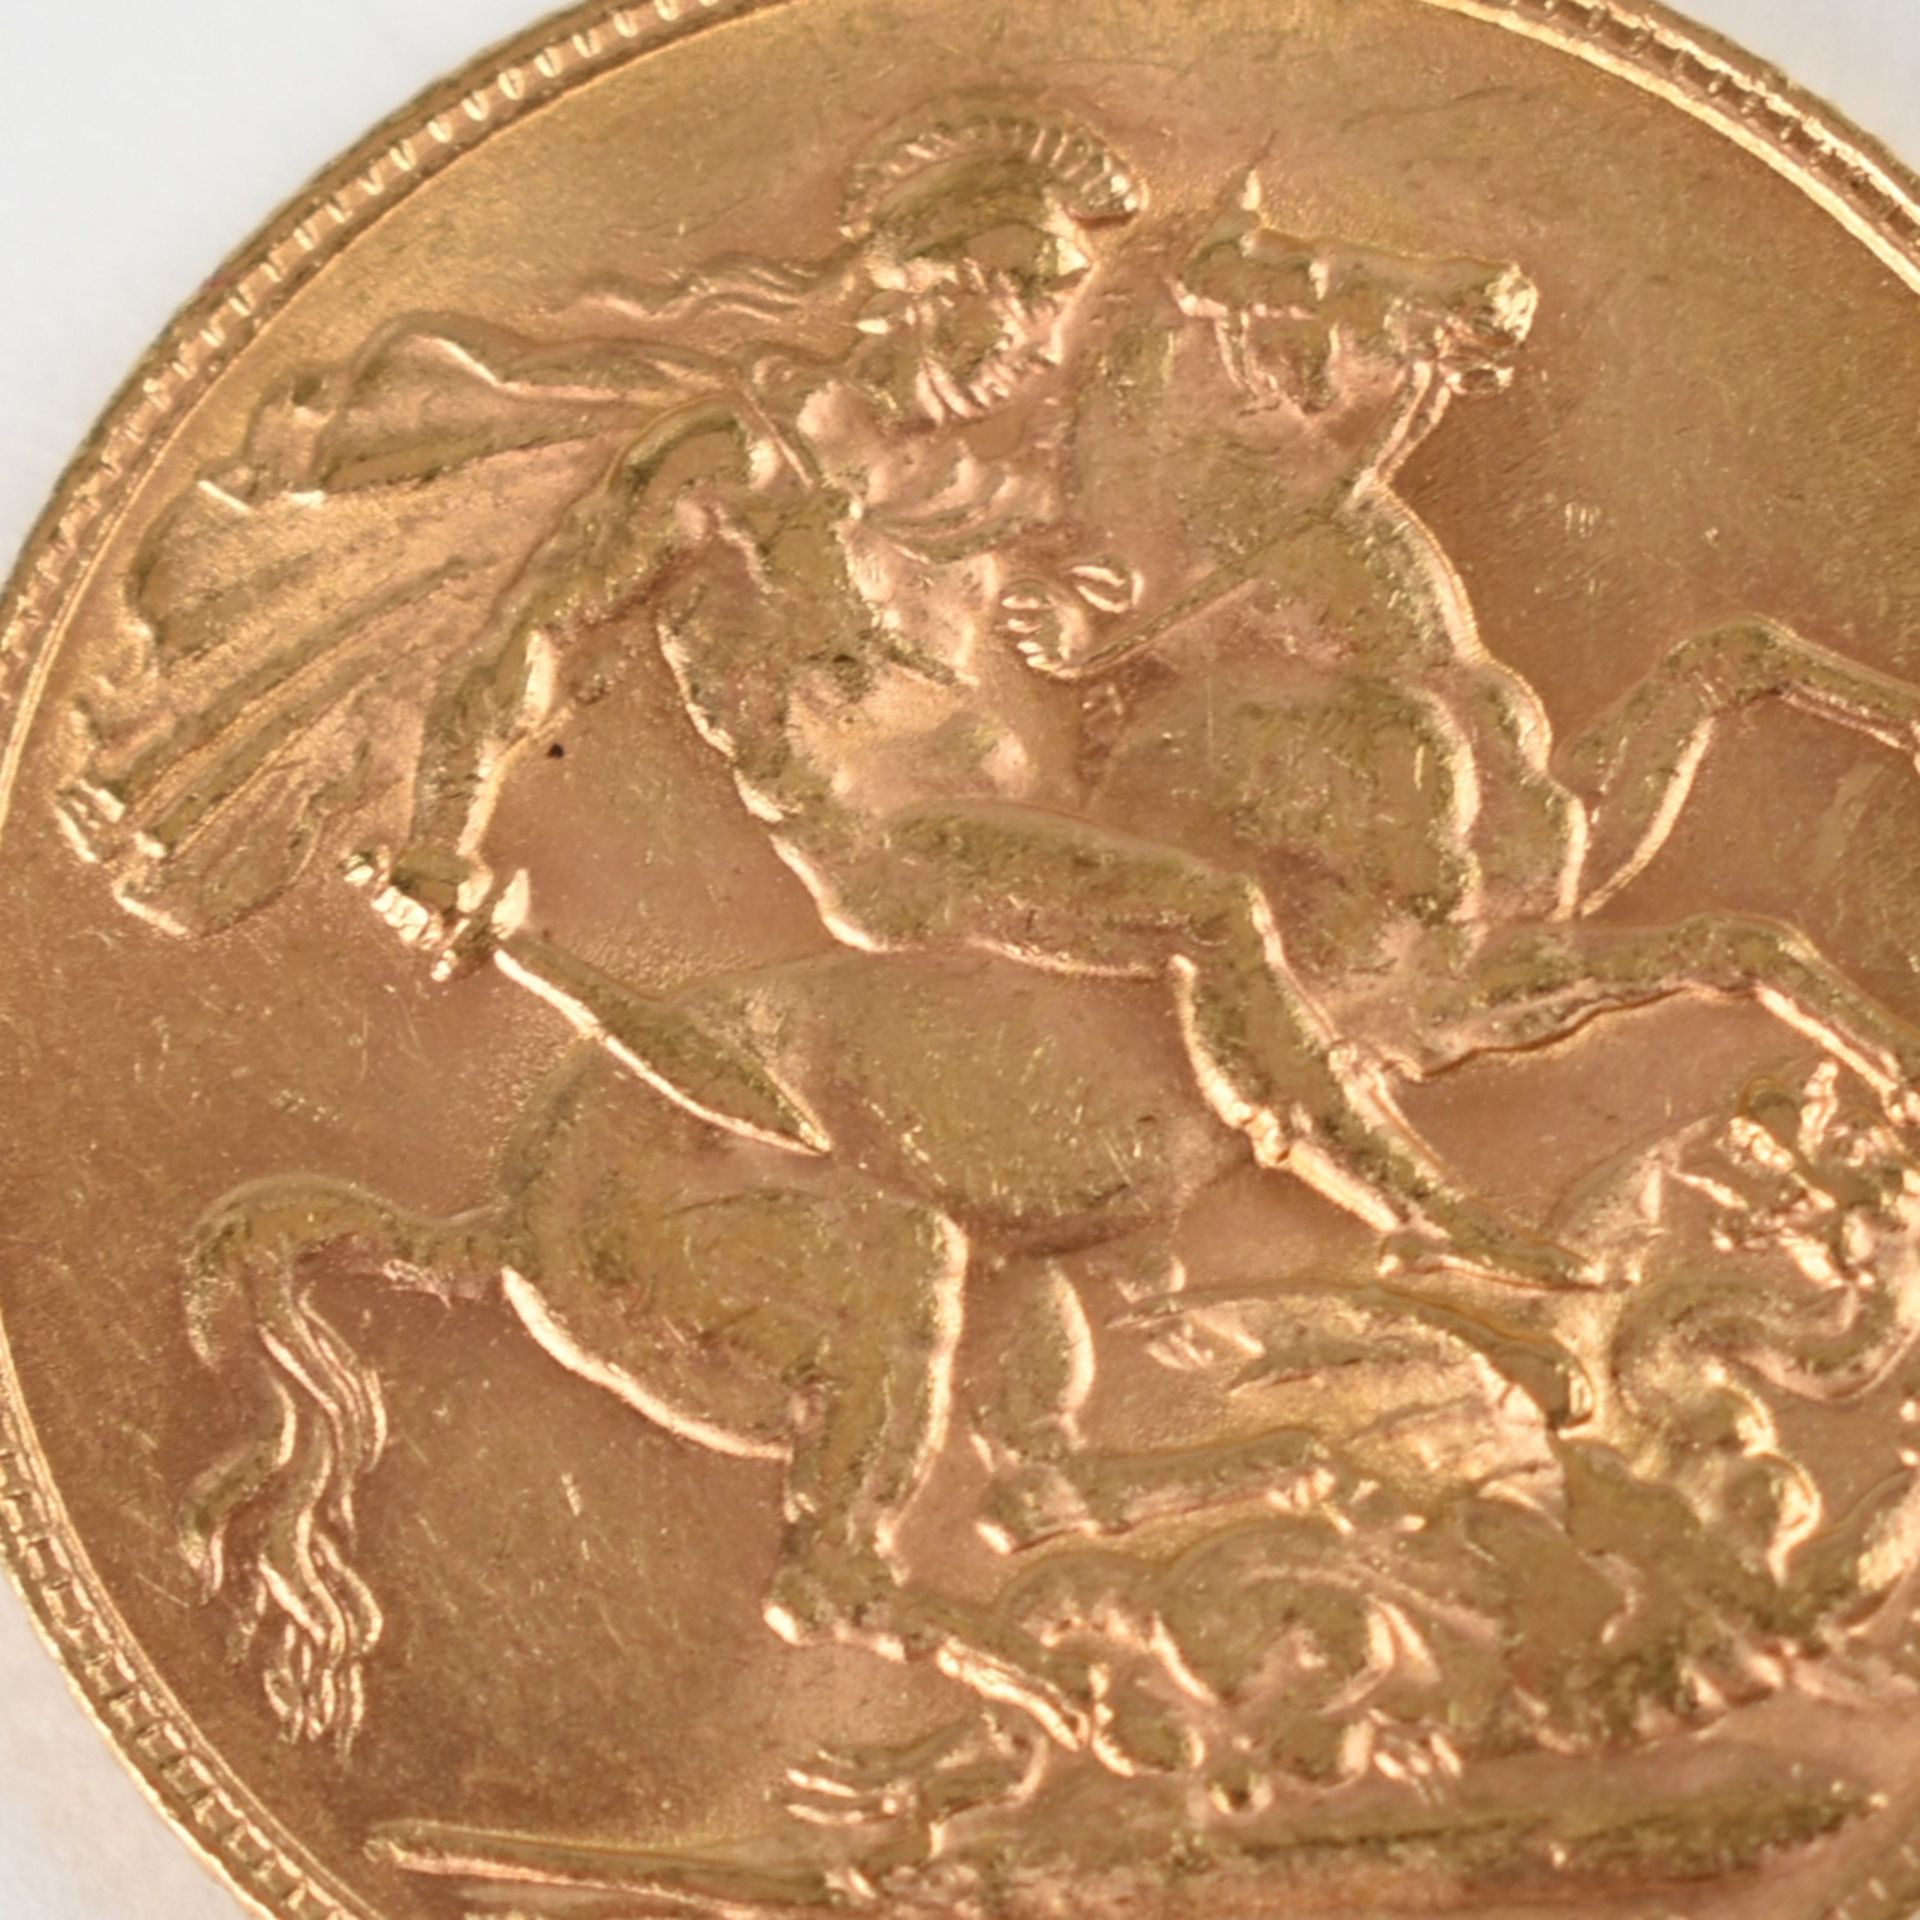 Goldmünze Großbritannien 1910 Sovereign in Gold, 916/1000, 7,988 g, D ca. 22 mm, av. König George V.